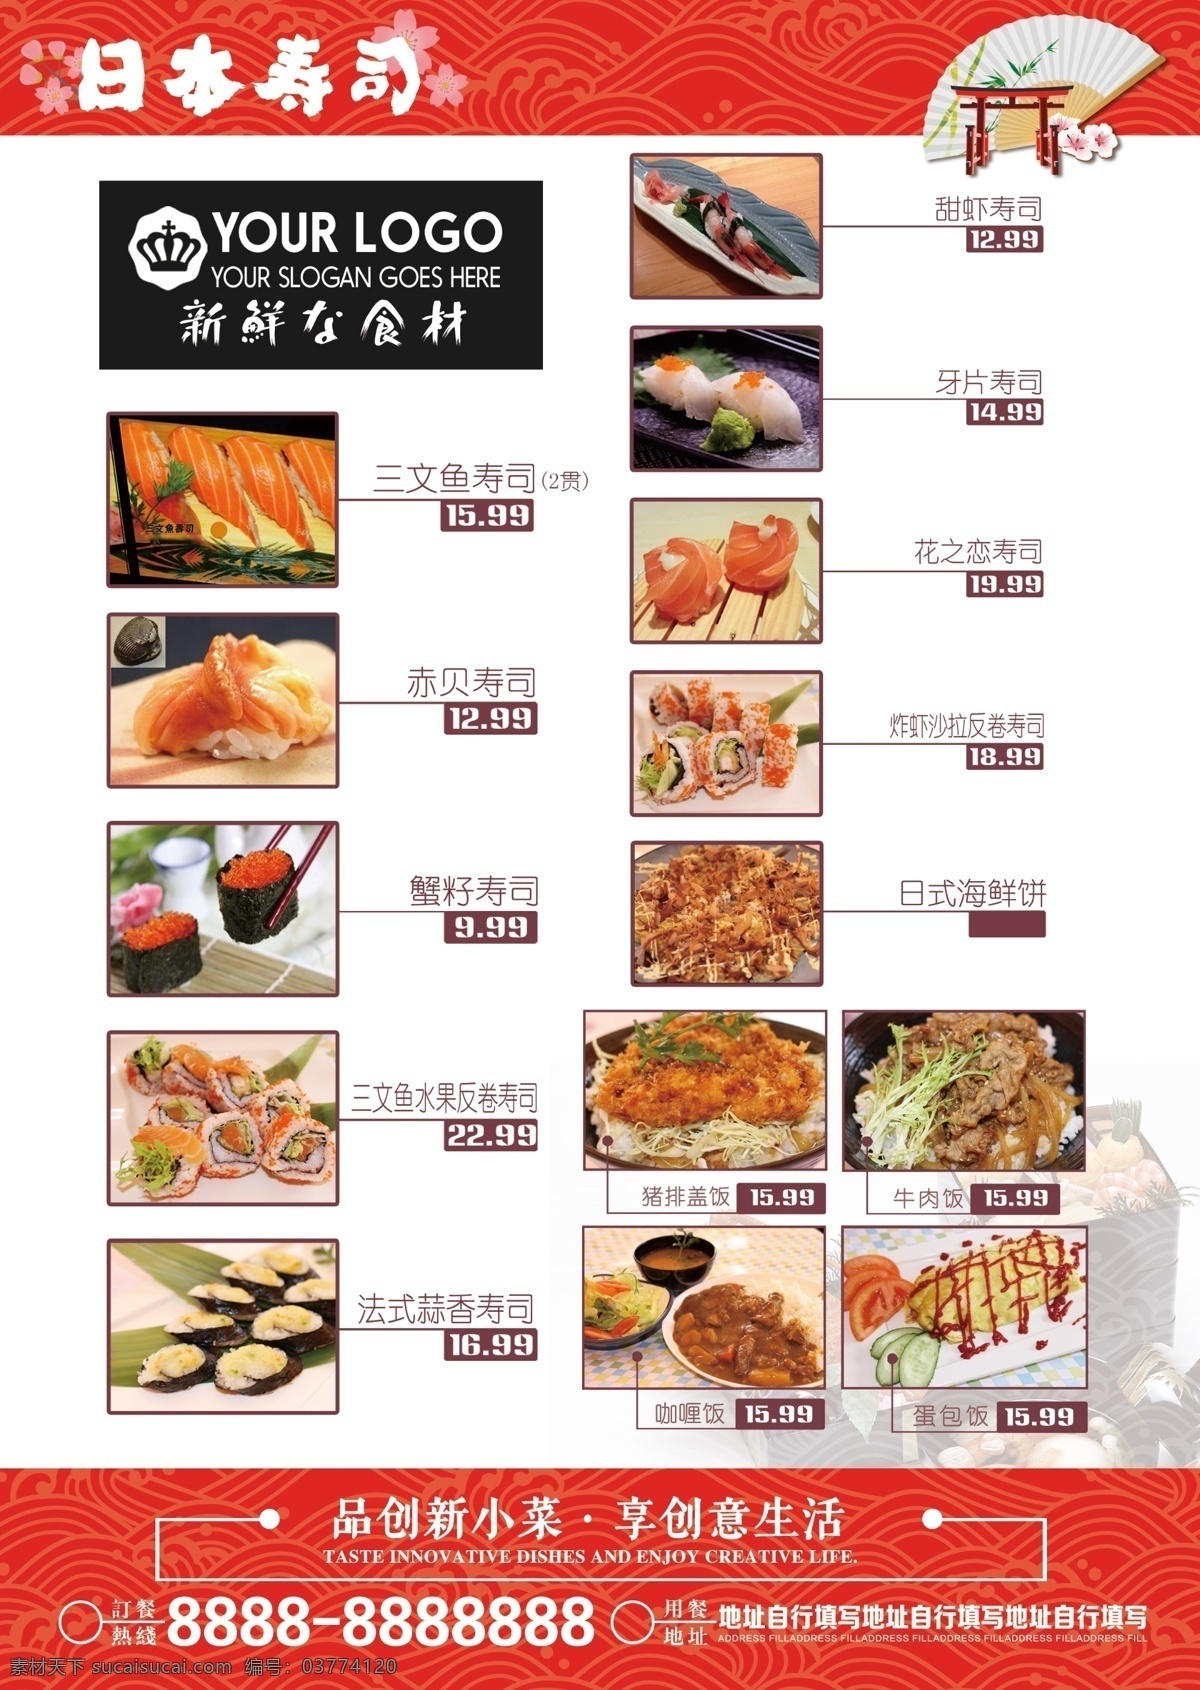 寿司日本 料理菜单 日本美食 寿司 高清寿司 寿司海报